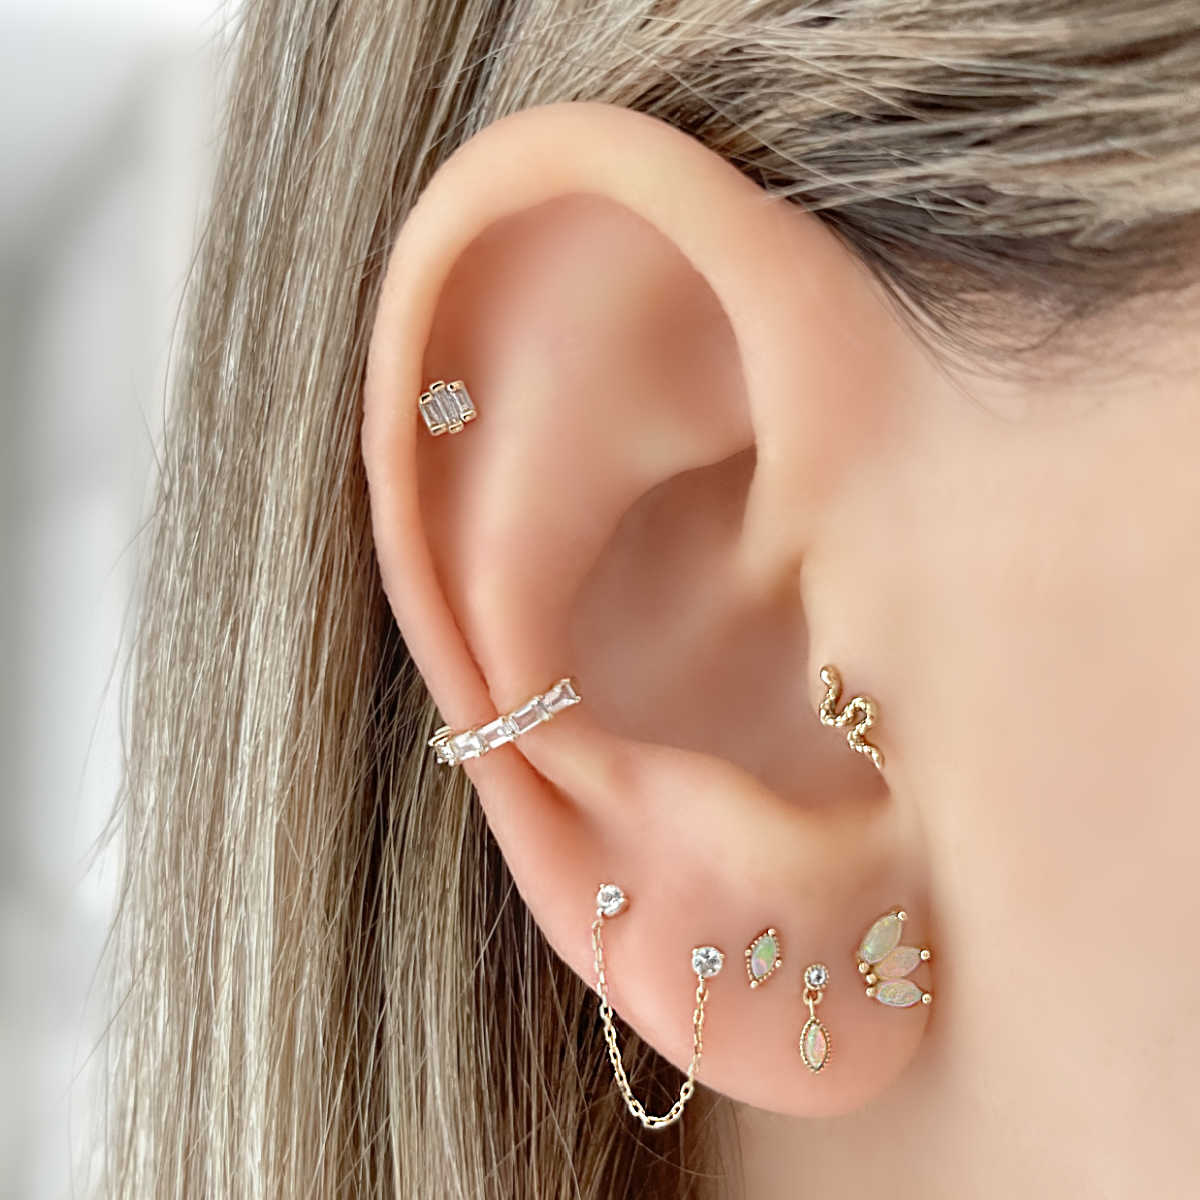 Butterfly Helix Piercing Earring For Women Septum Cartilage Stud Ear Hoop  Stainless Steel Zircon Lobe Tragus Flat Piercing 1pc - Stud Earrings -  AliExpress